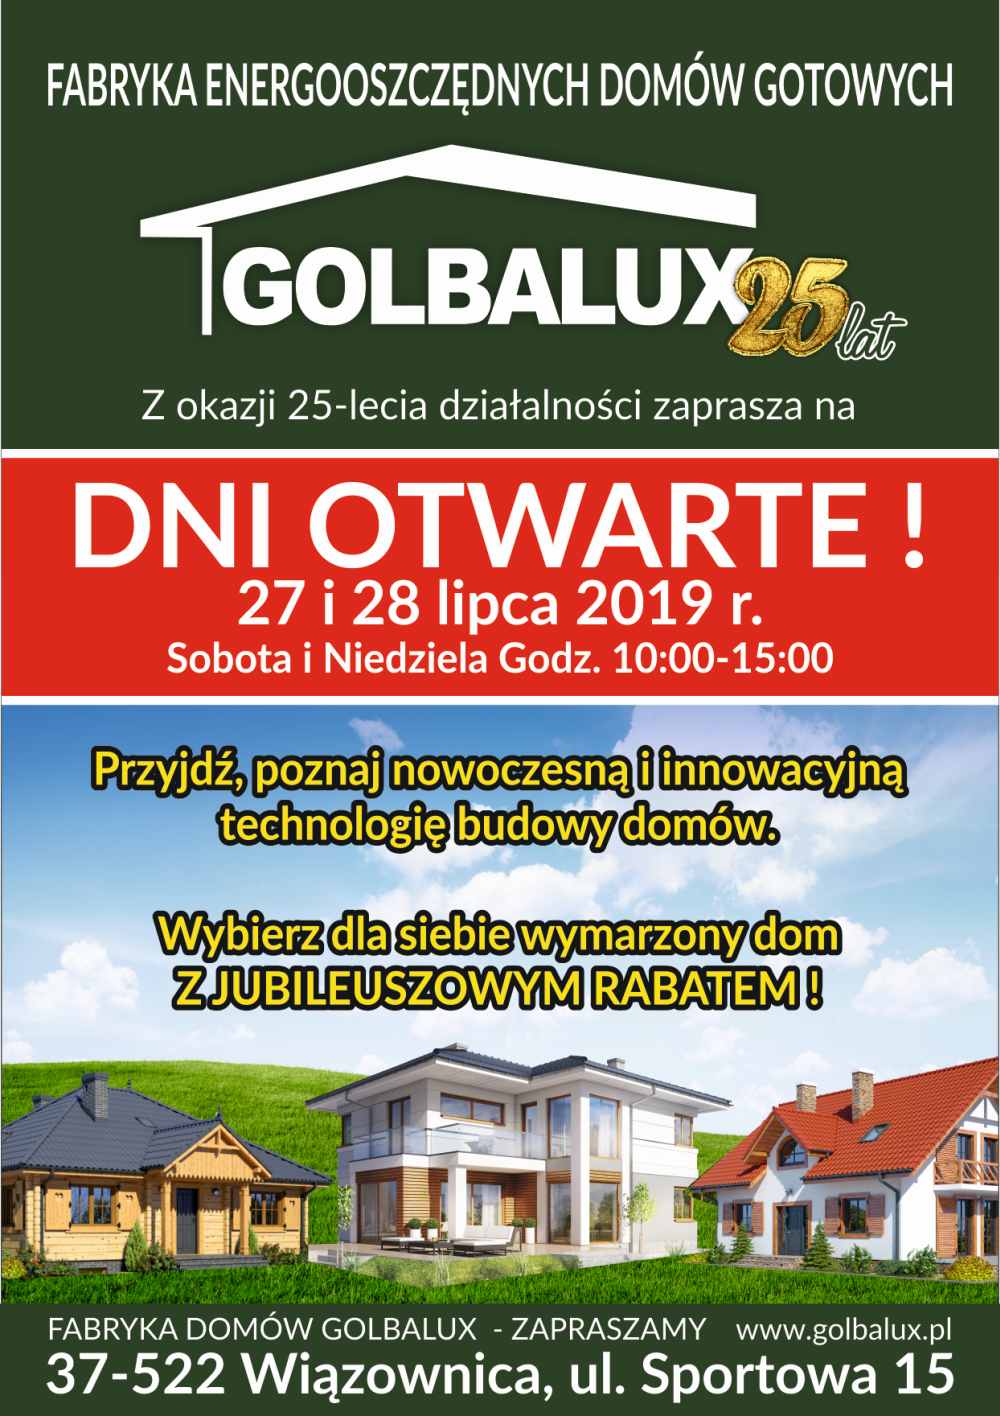 Zaproszenie dni otwarte Fabryka domów Golbalux